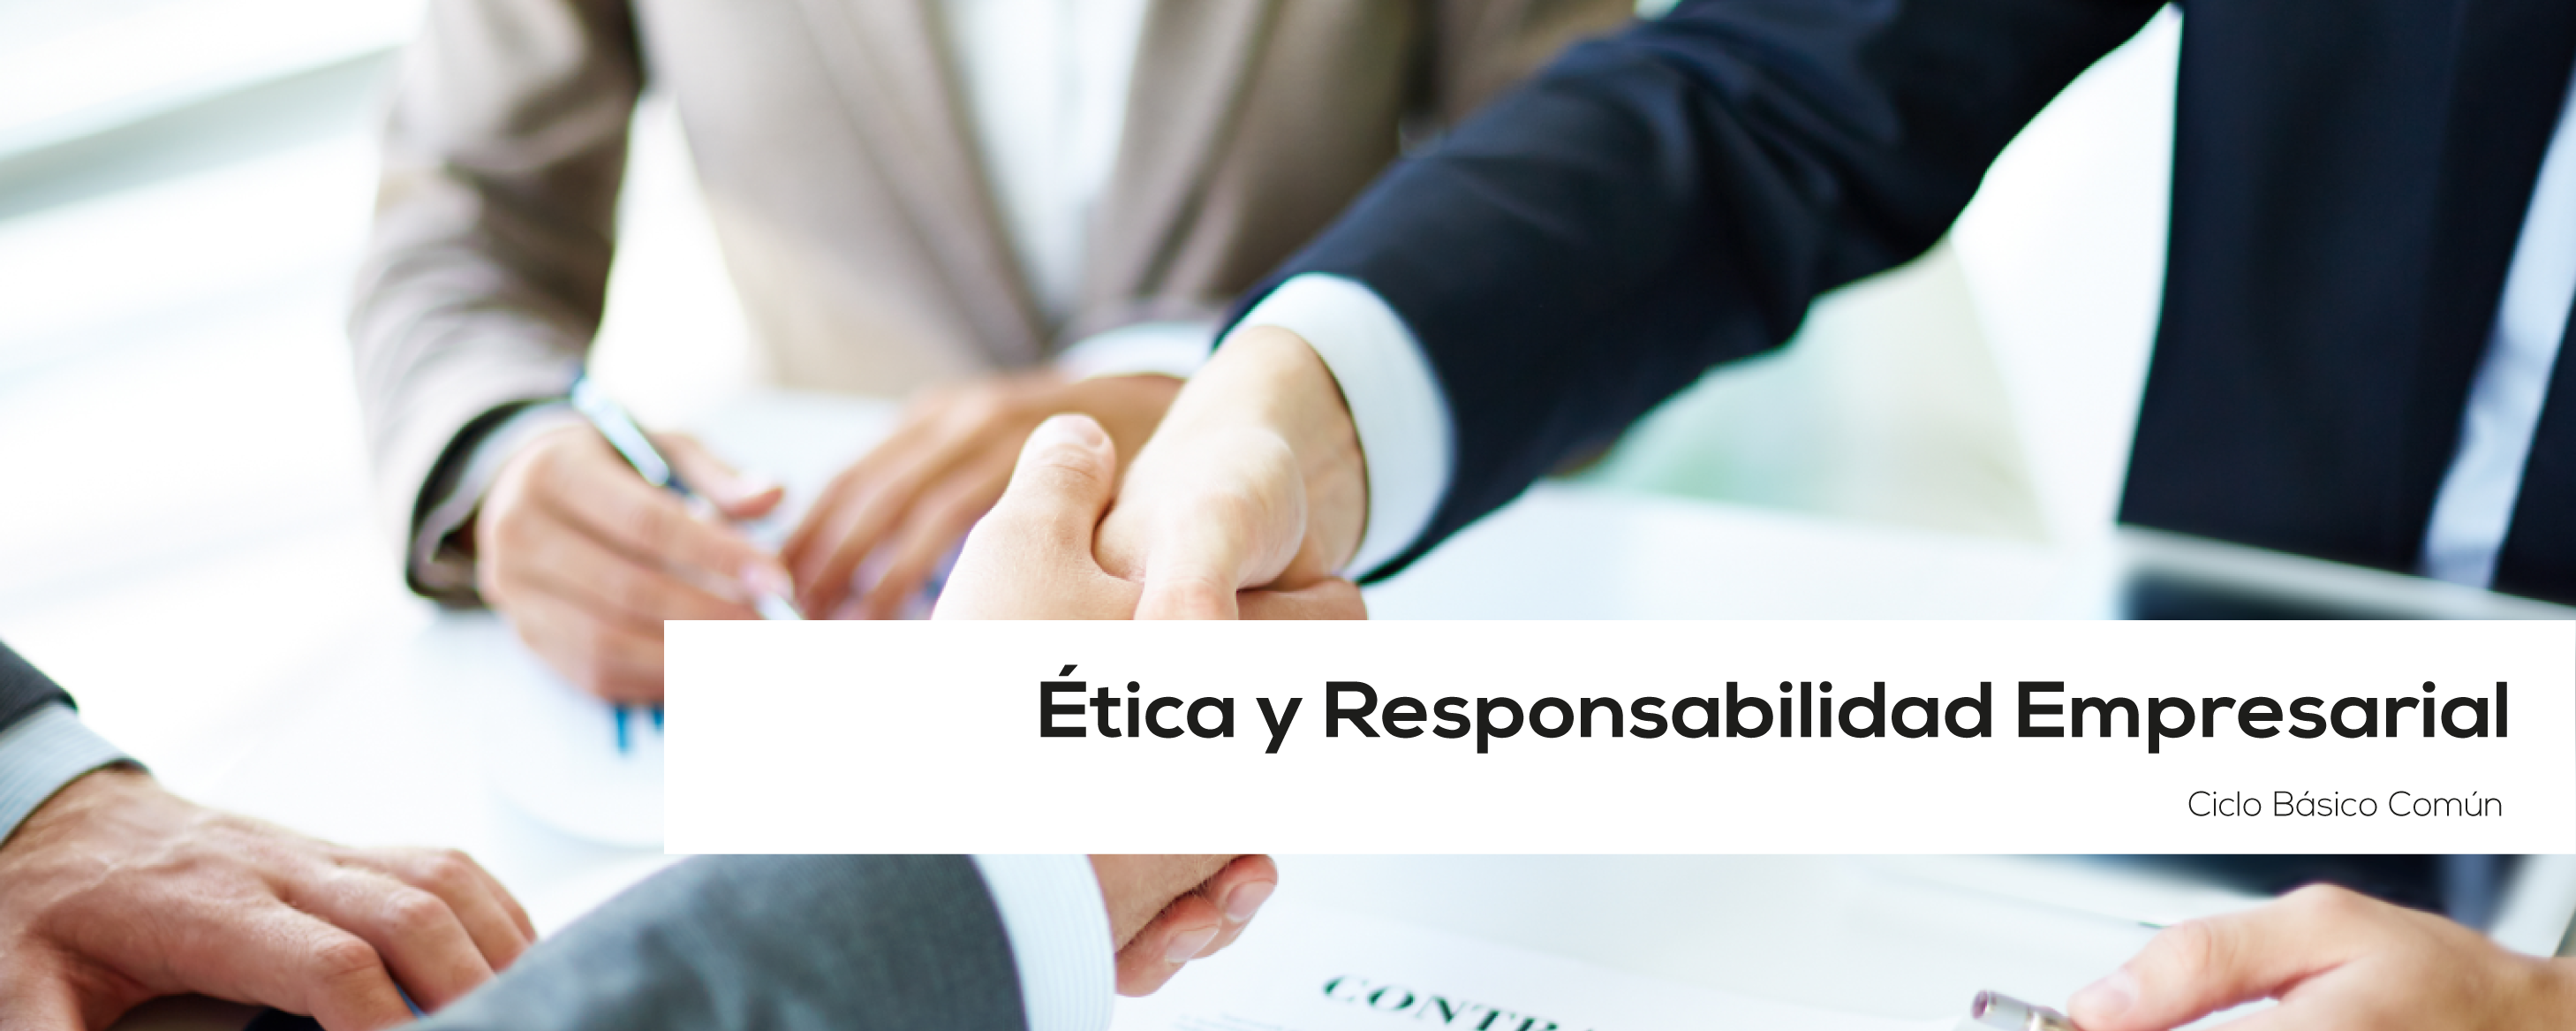 BUA 300 | 21SU-4B BUA 300 | Ética y responsabilidad empresarial| OCTUBRE 2021 